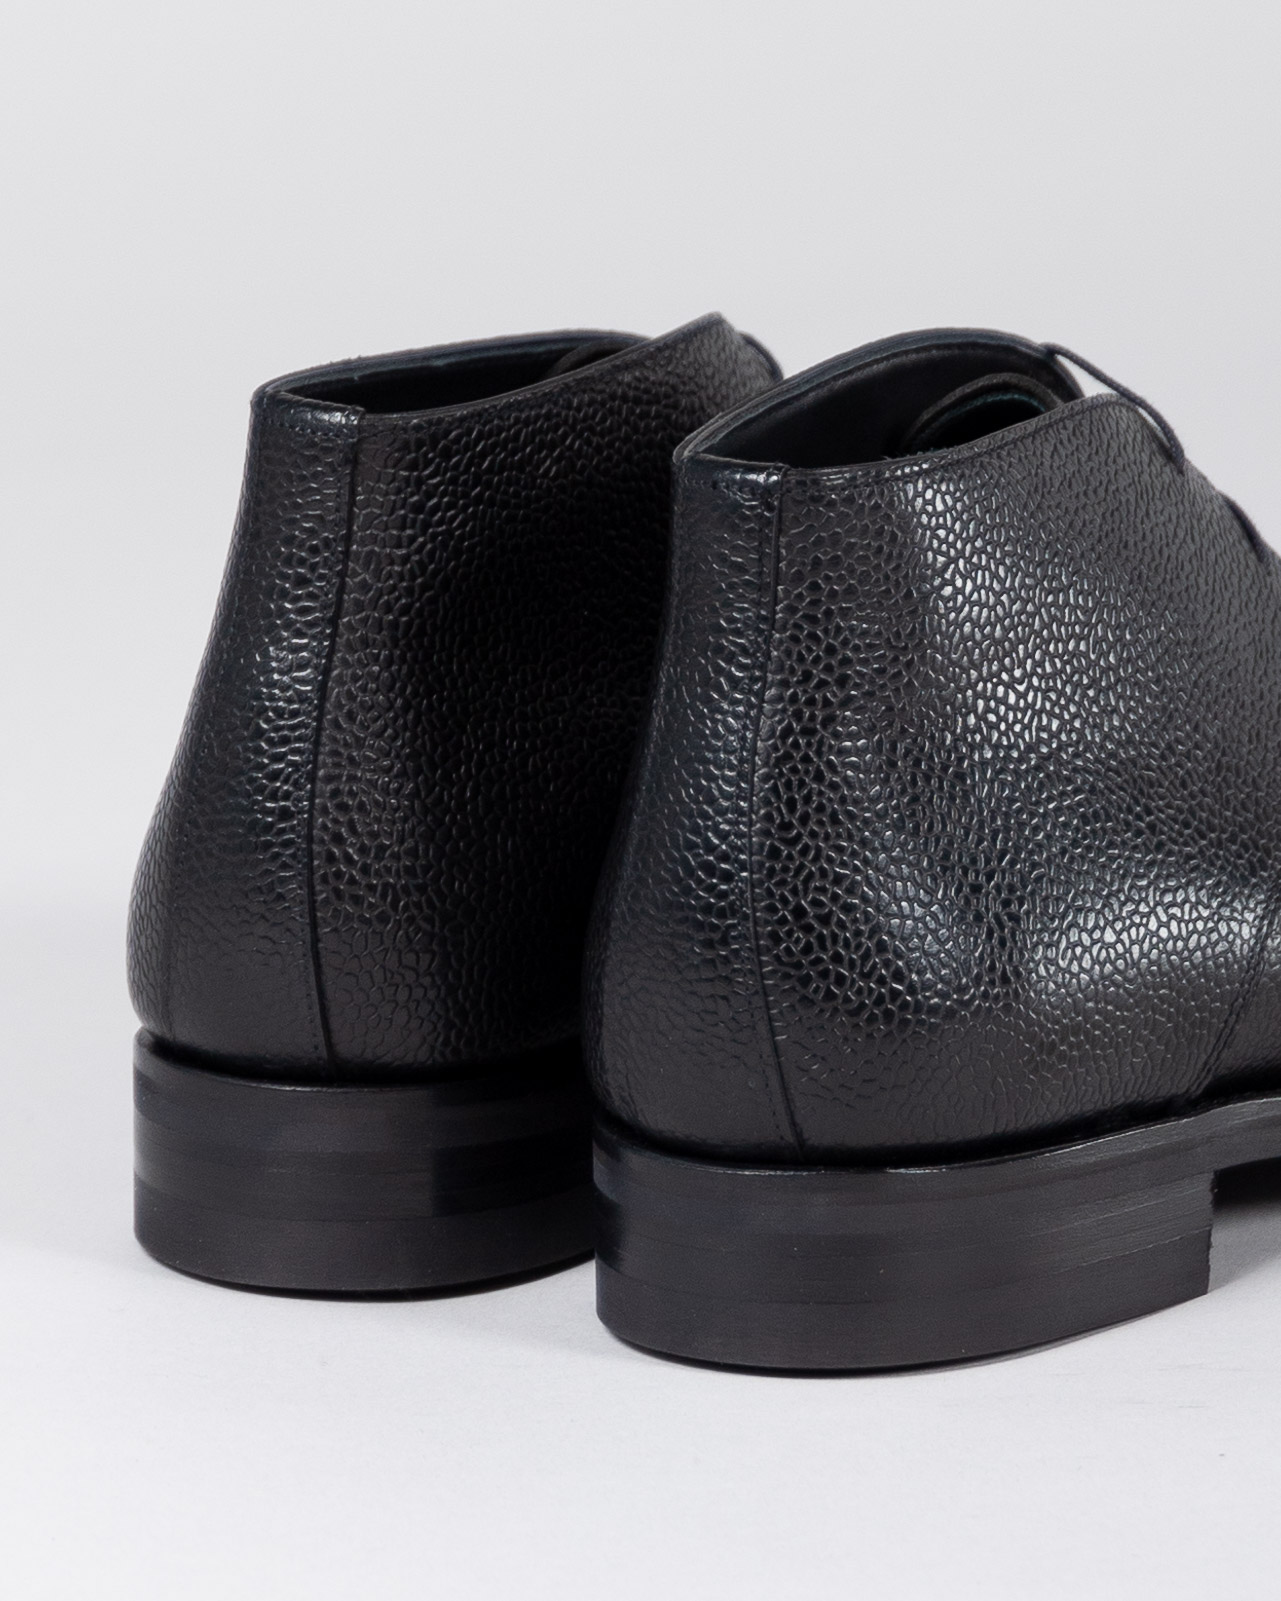 Chukka Boot - Grain Leather